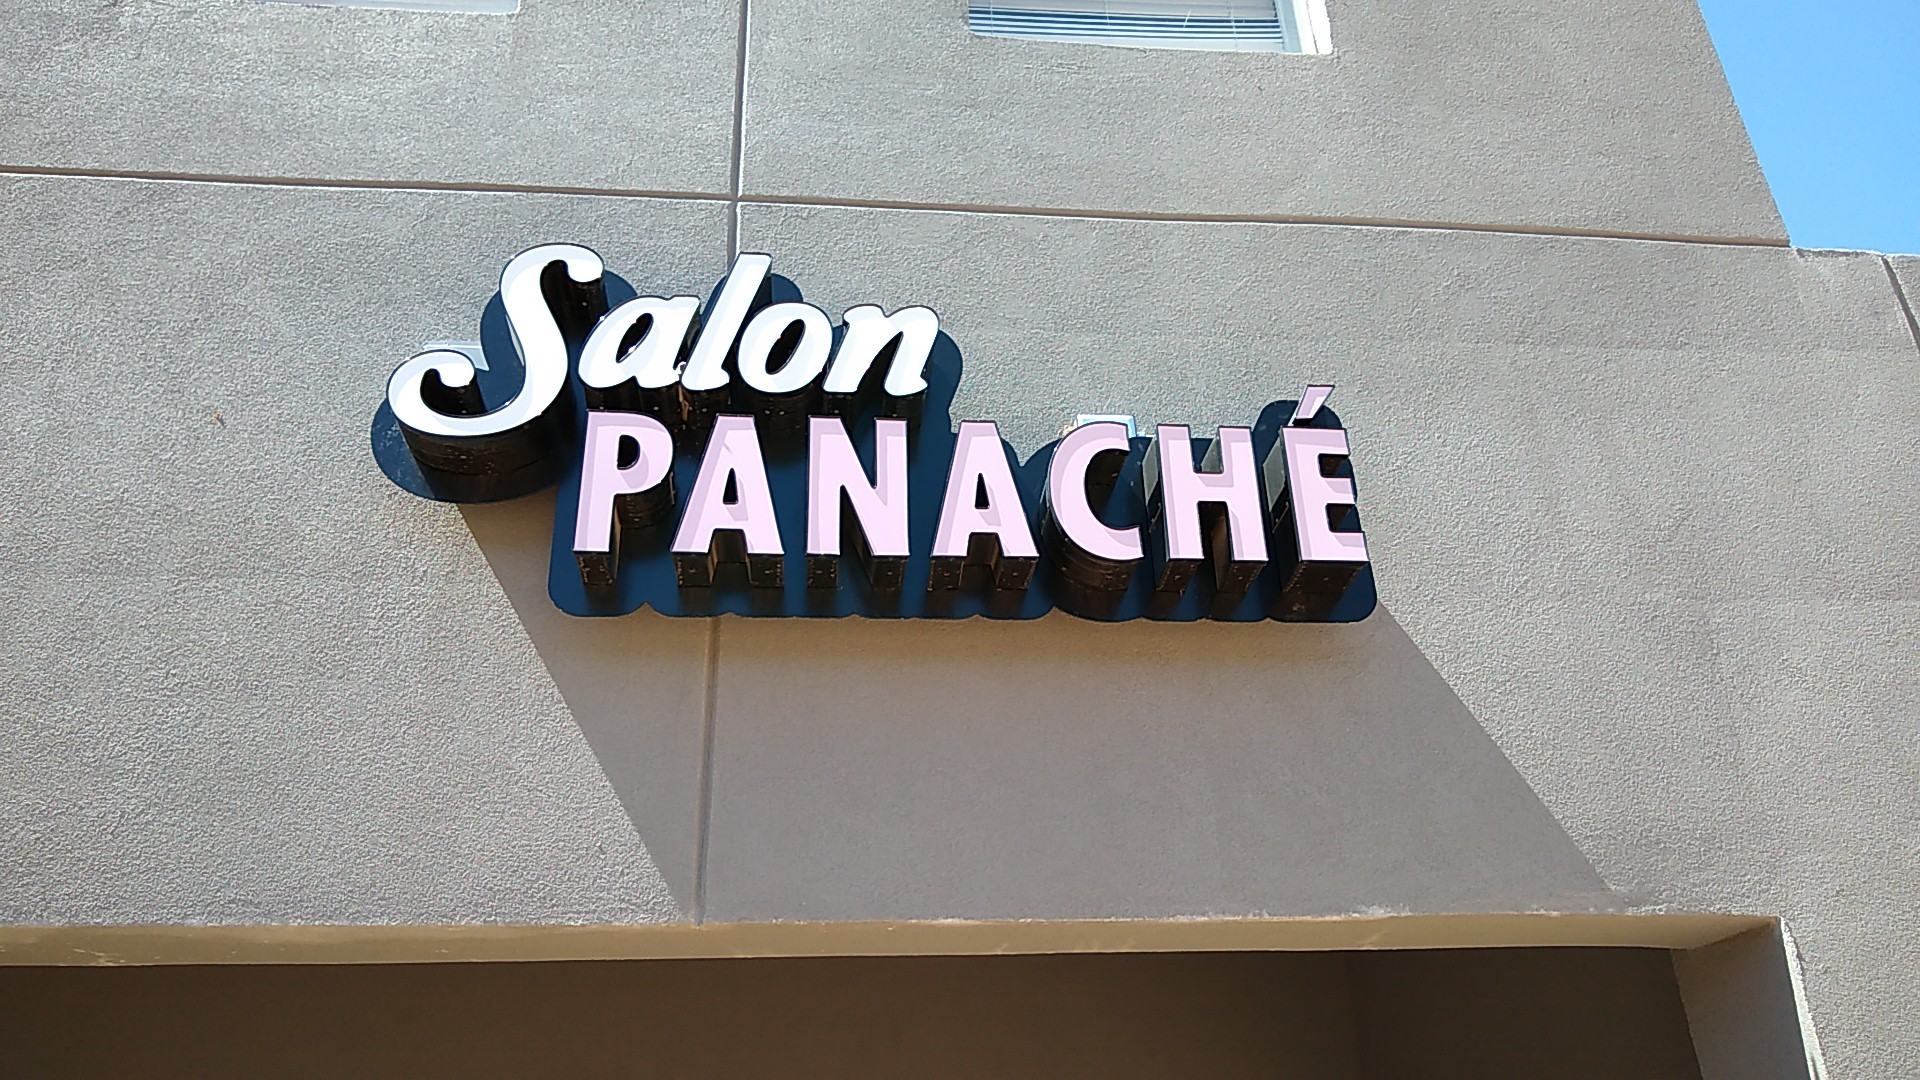 Salon Panache